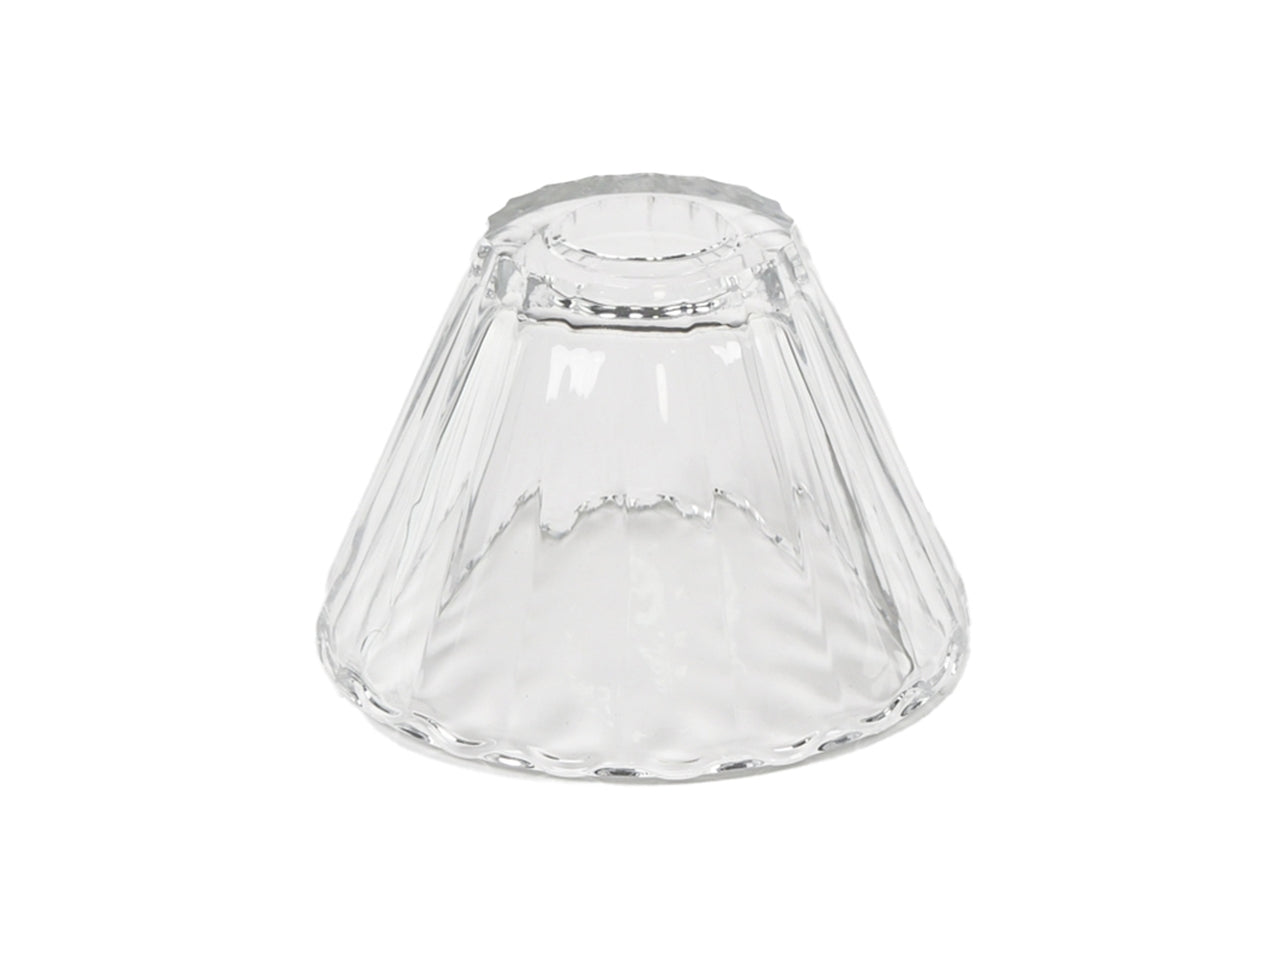 Paralume in vetro trasparente forma campana stile moderno d.13x9 cm - Plàthea